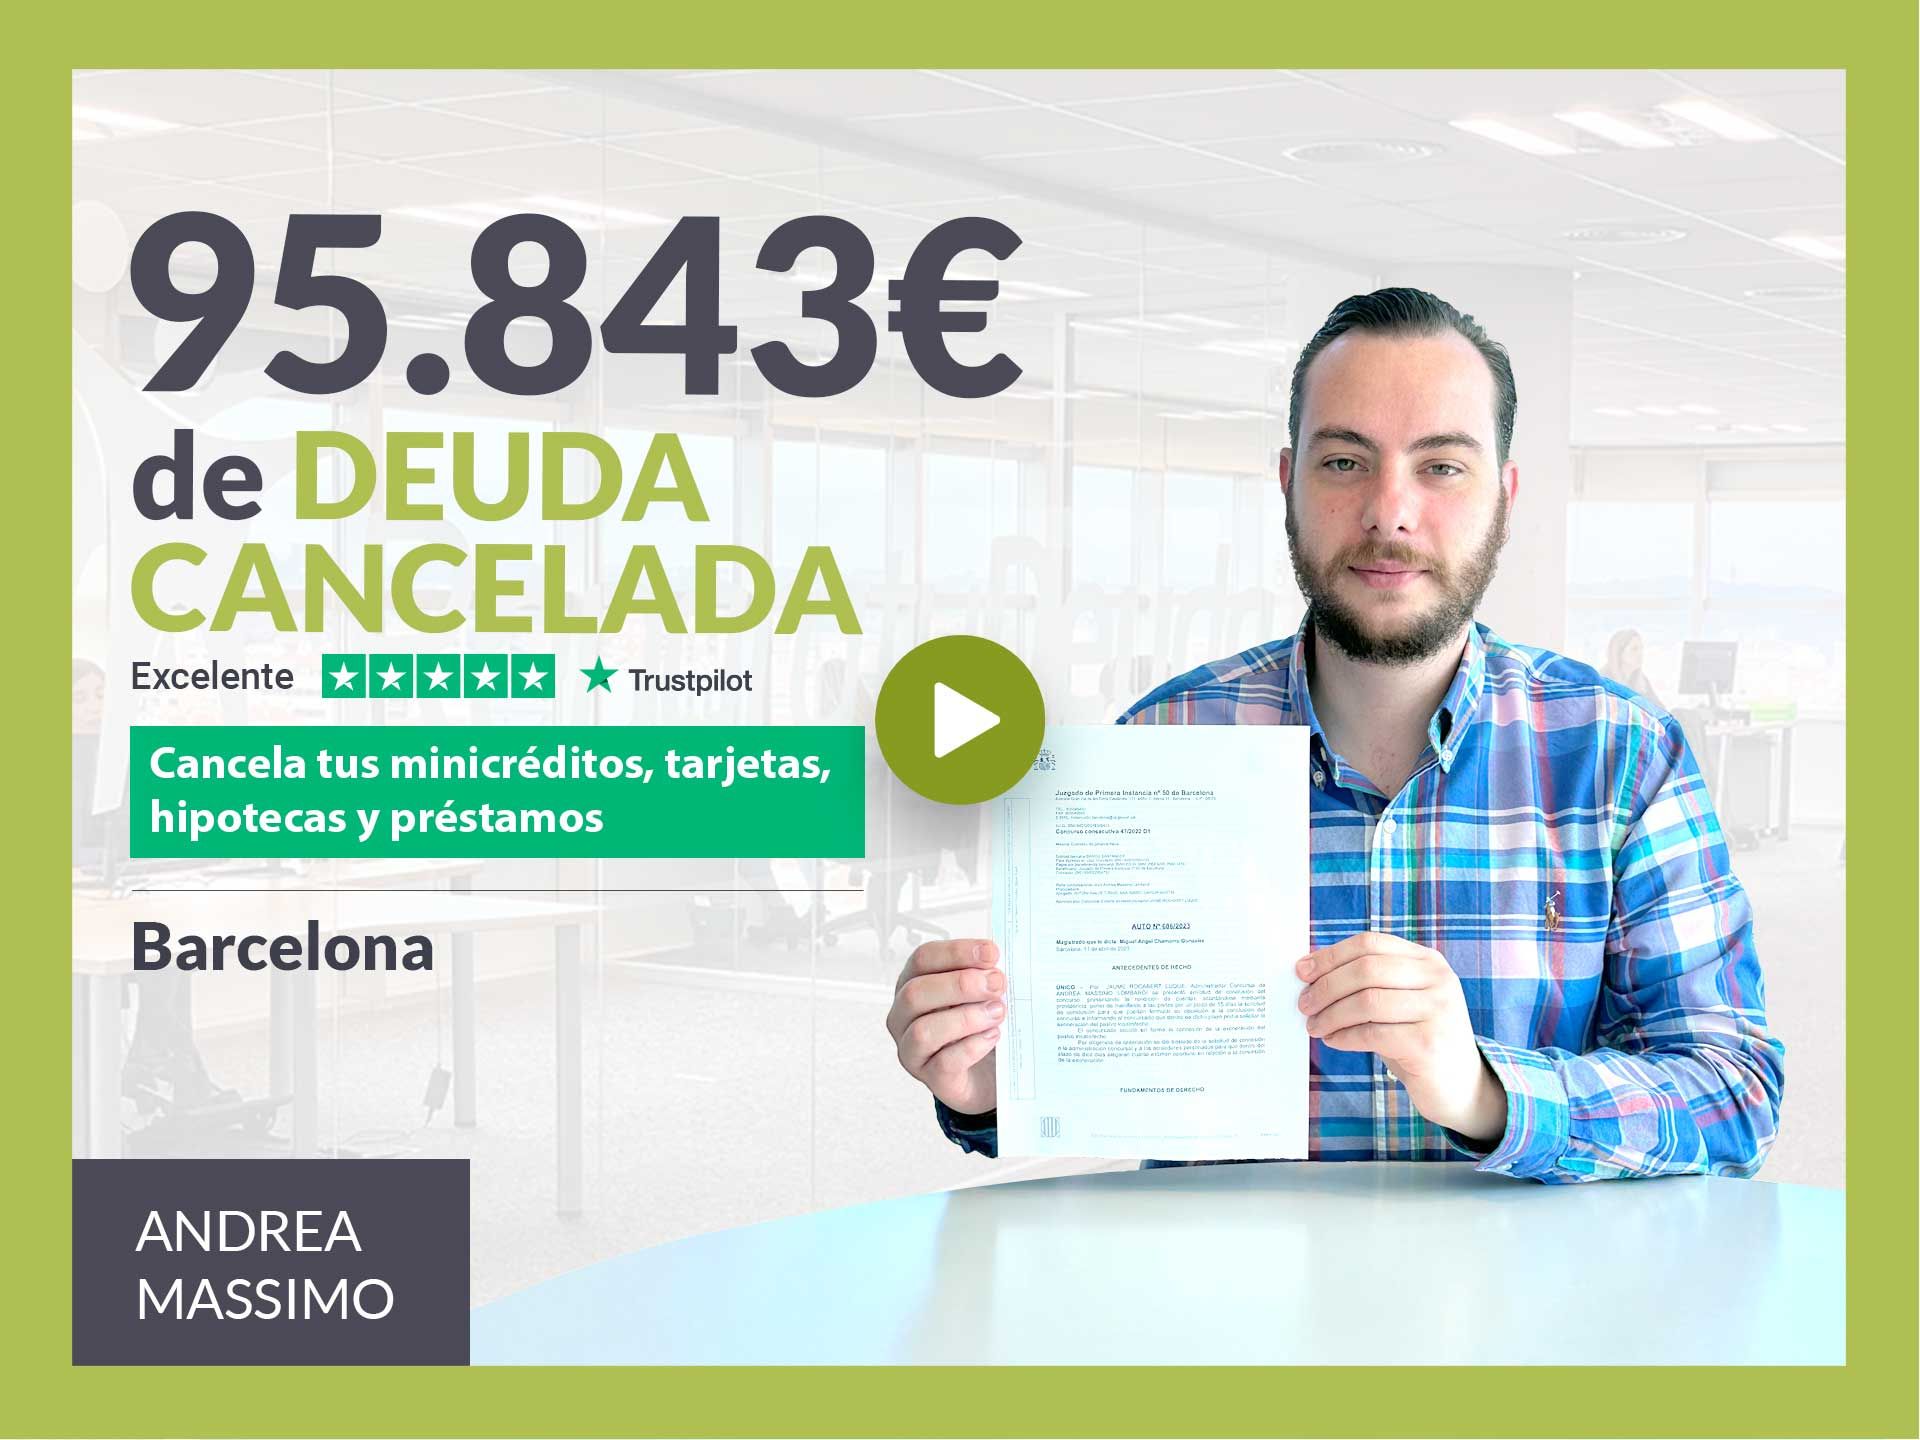 Repara tu Deuda Abogados cancela 95.843? en Barcelona (Catalunya) con la Ley de Segunda Oportunidad